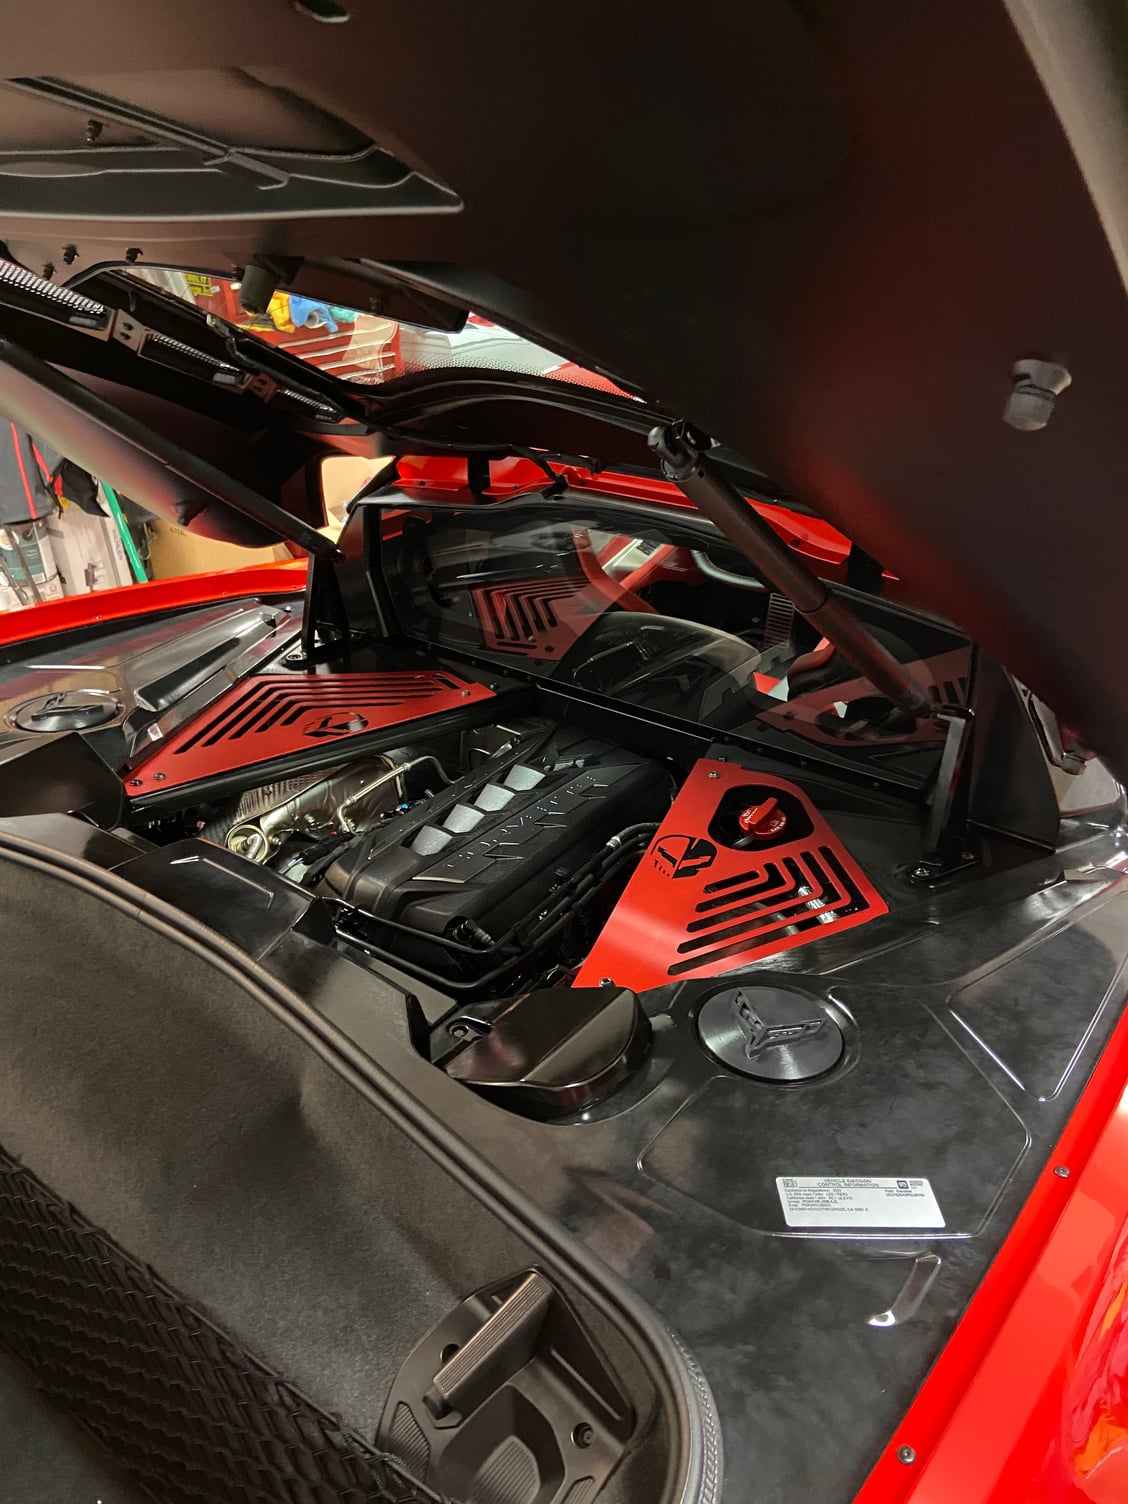 2023 Corvette C8 engine bay hard plastics - CorvetteForum